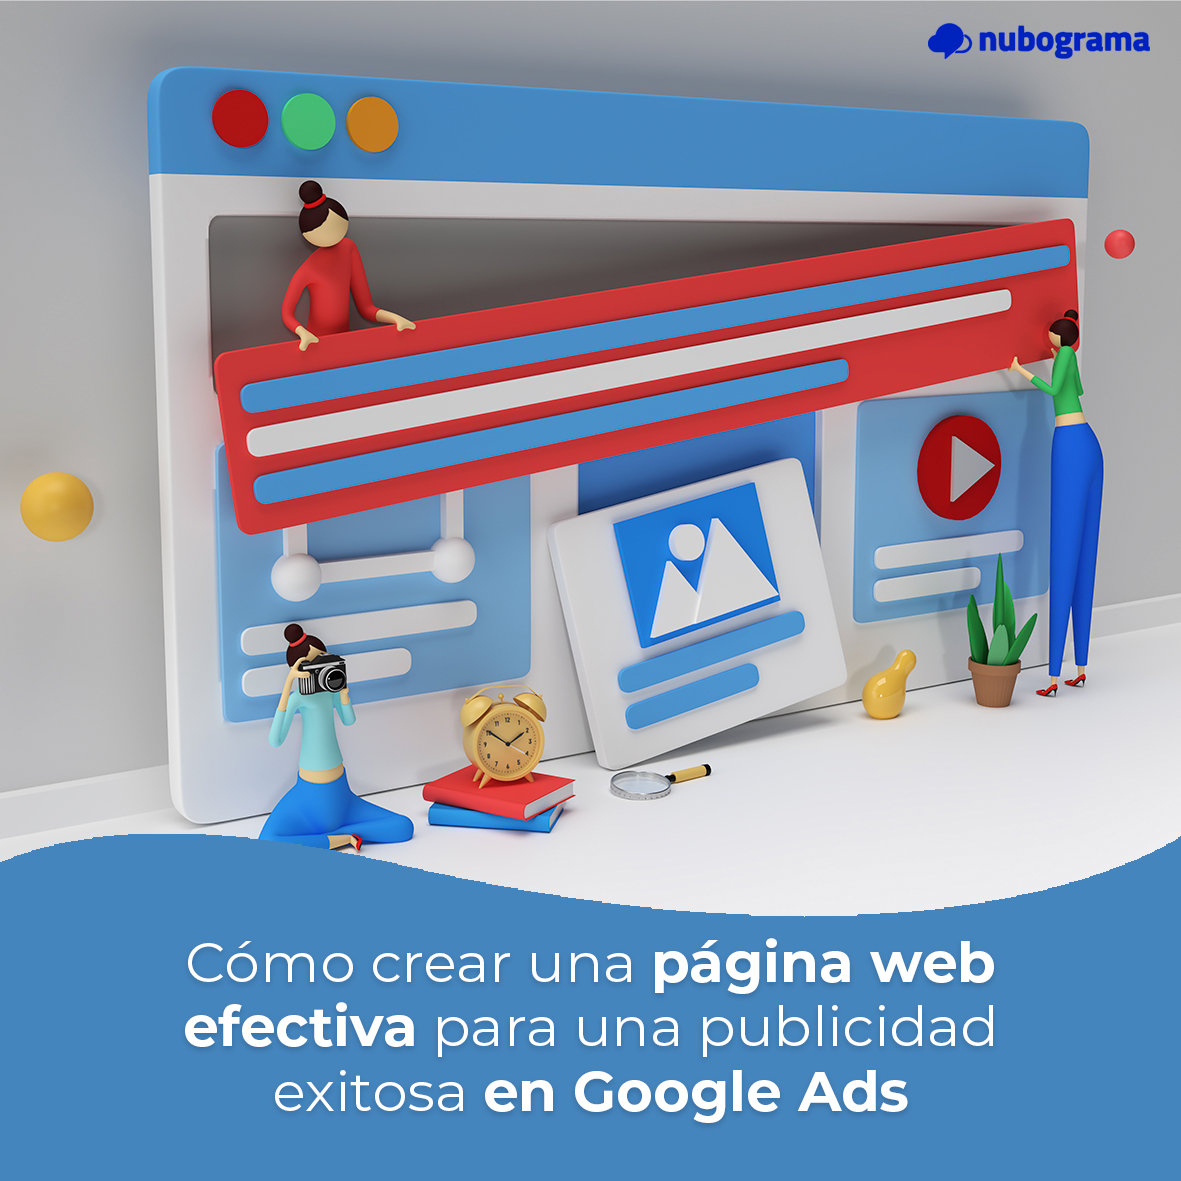 Cómo crear una página web efectiva para una publicidad exitosa en Google Ads